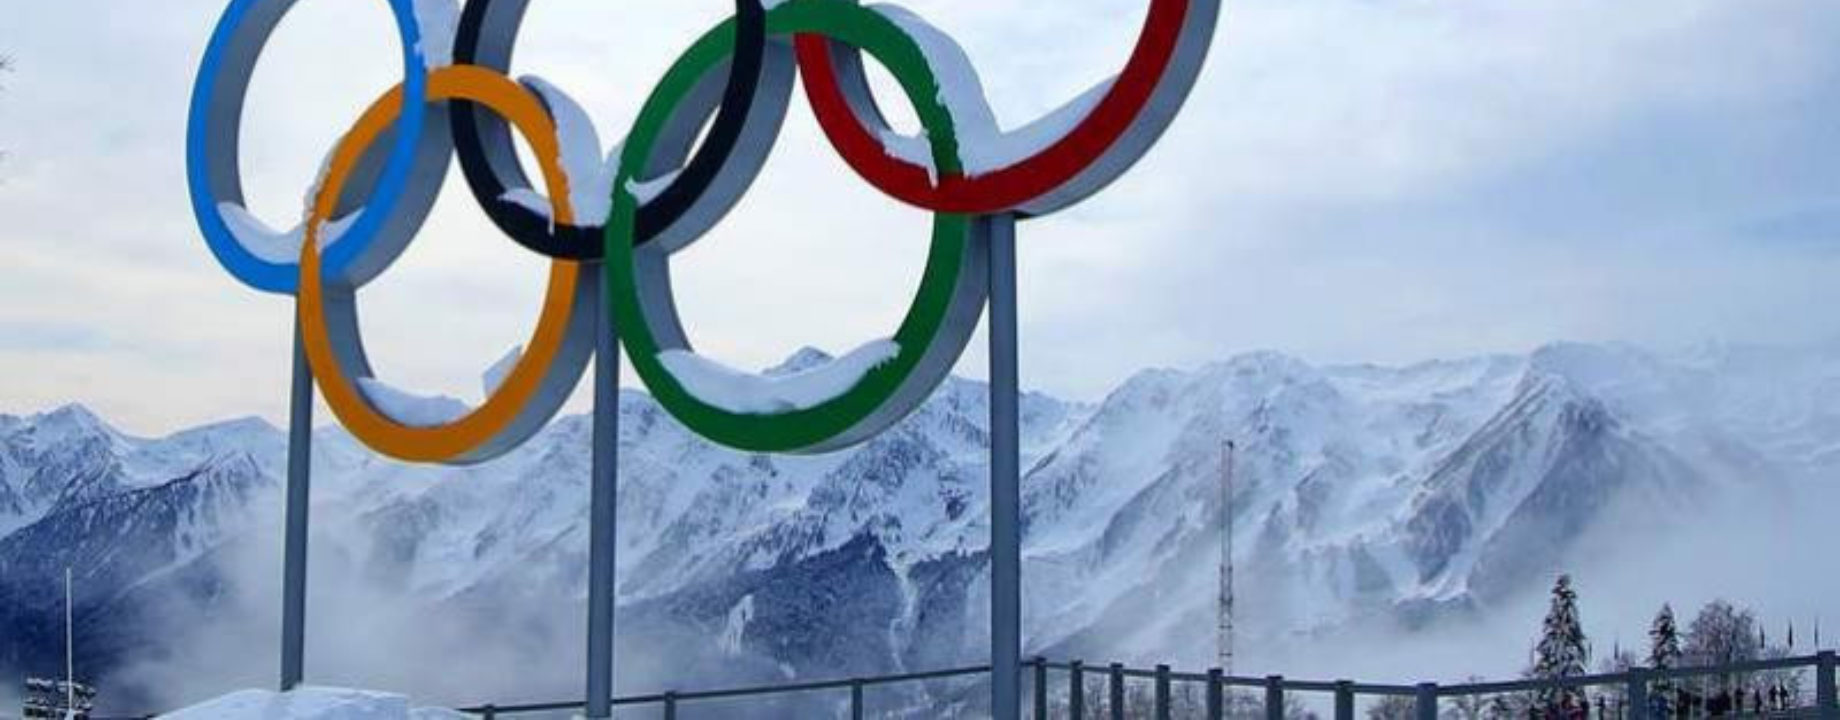 Pekig téli olimpia